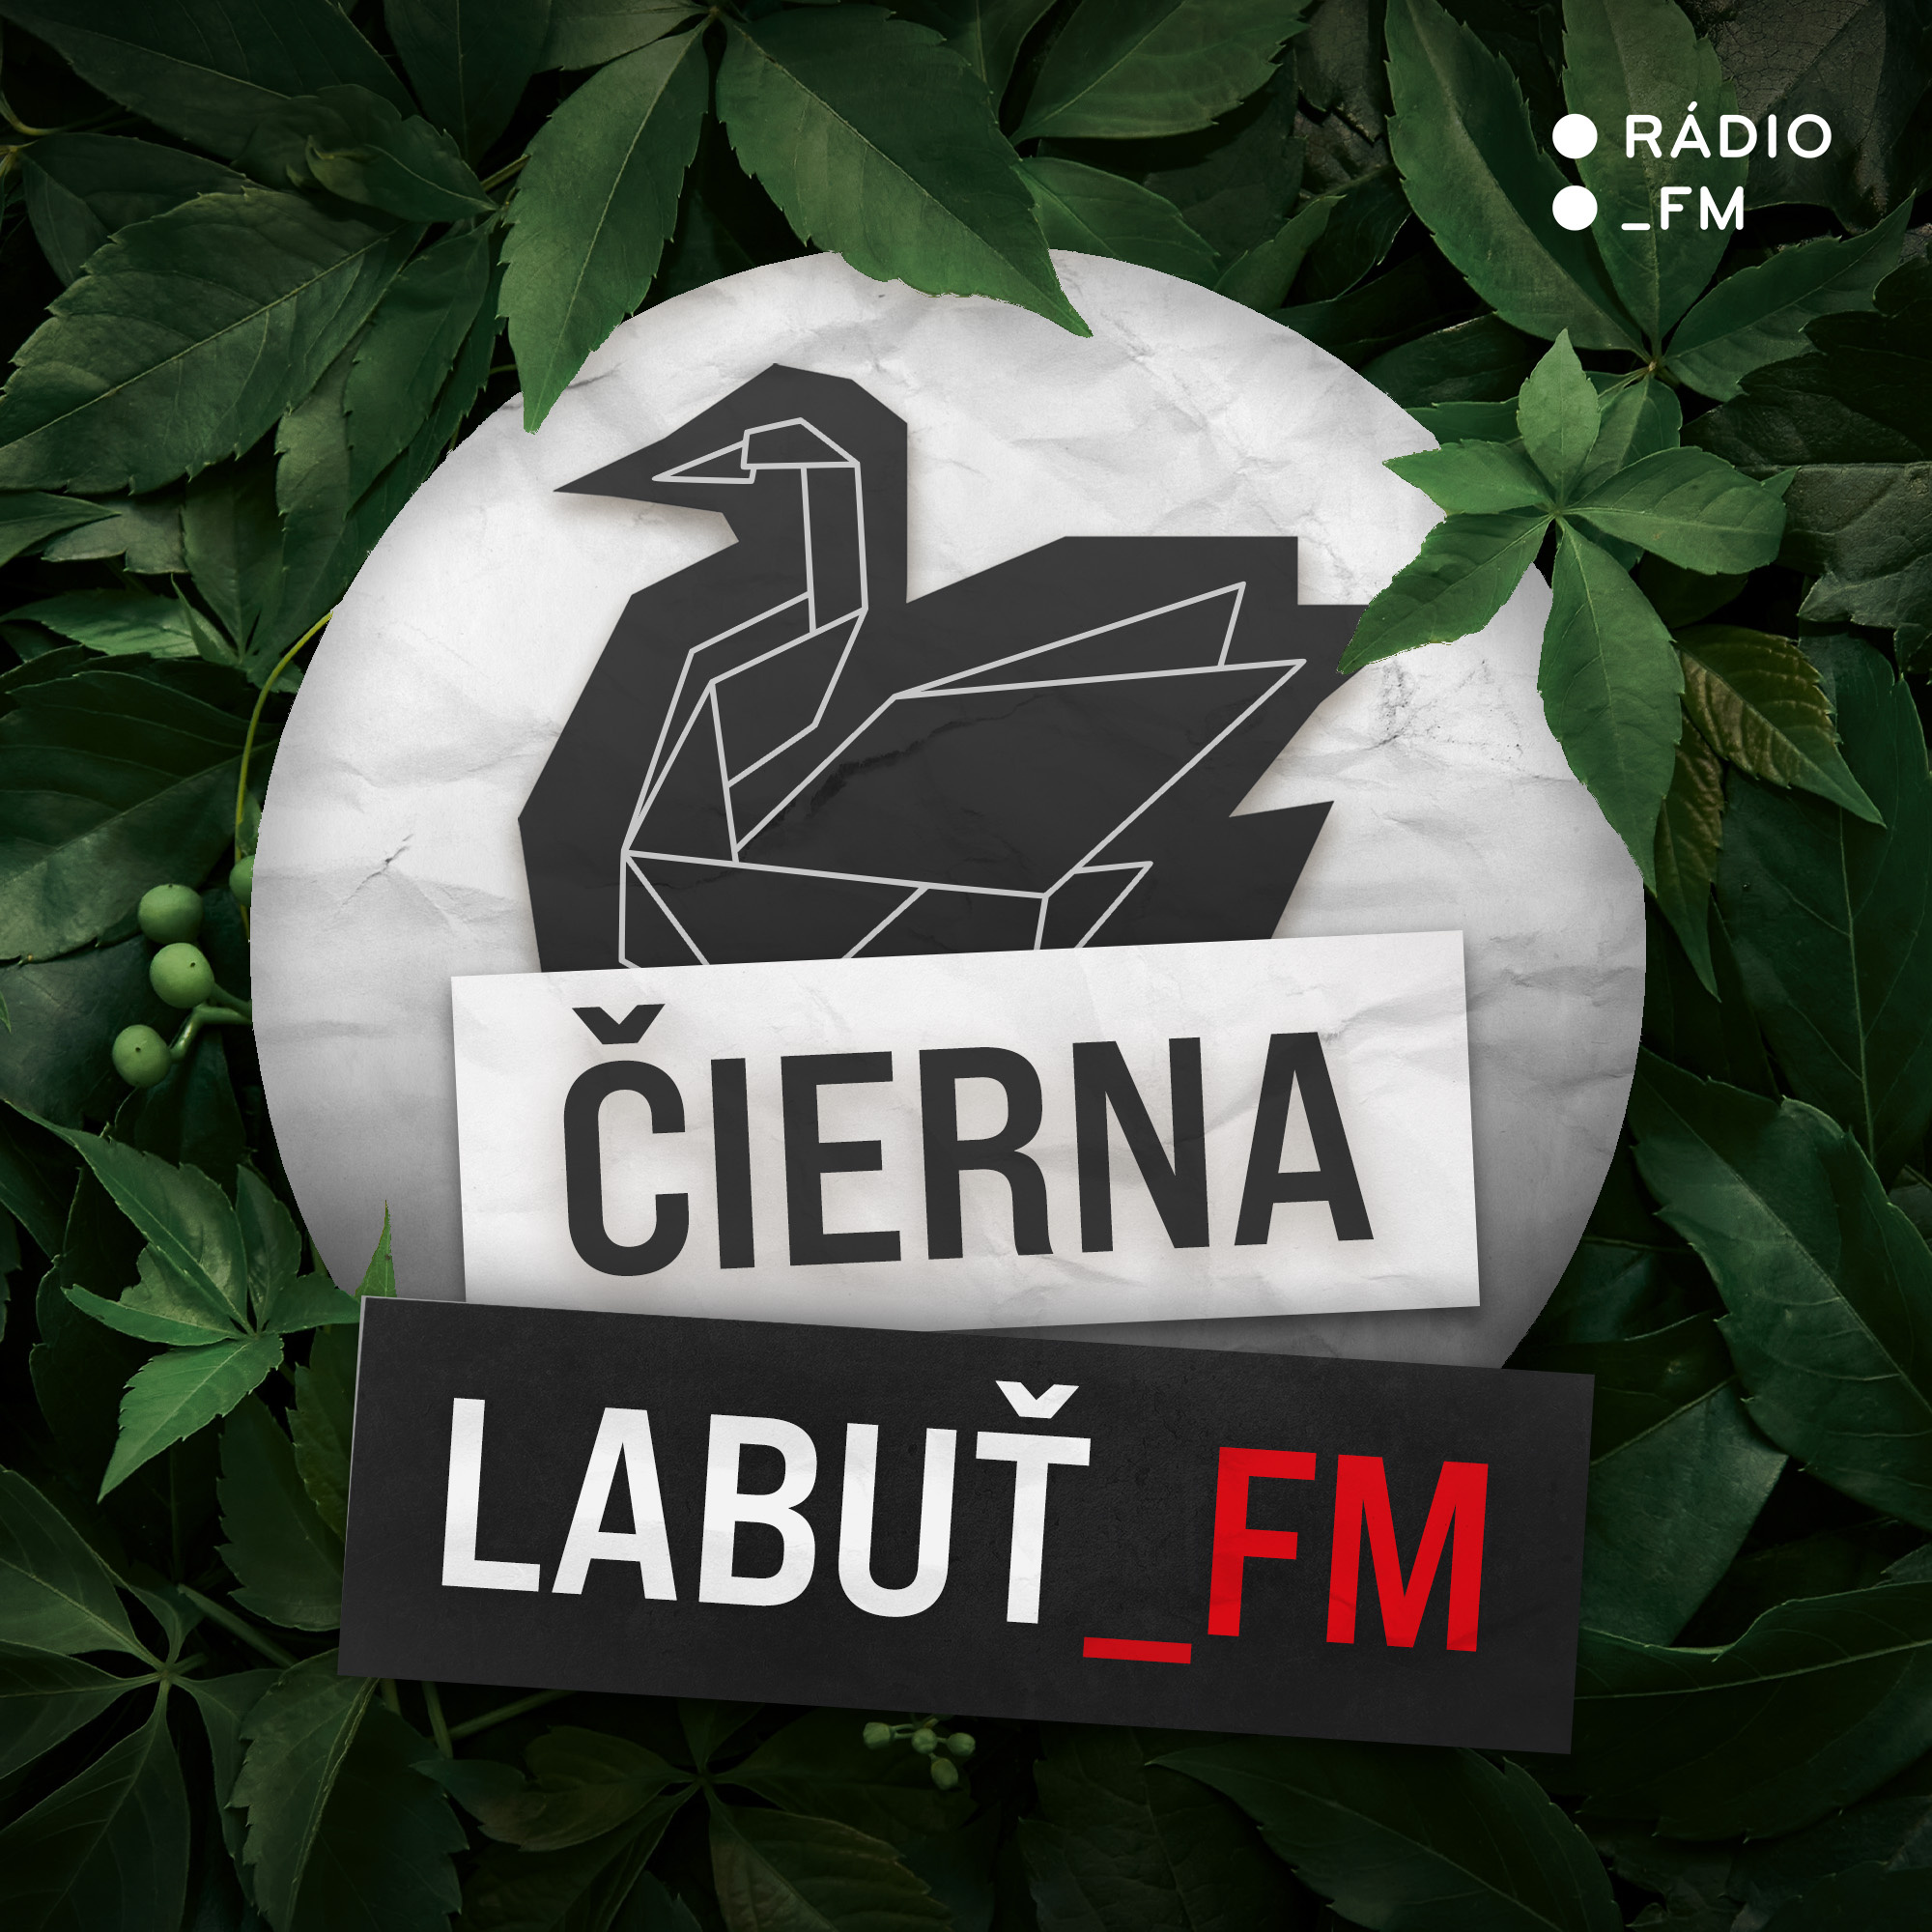 Čierna labuť_FM